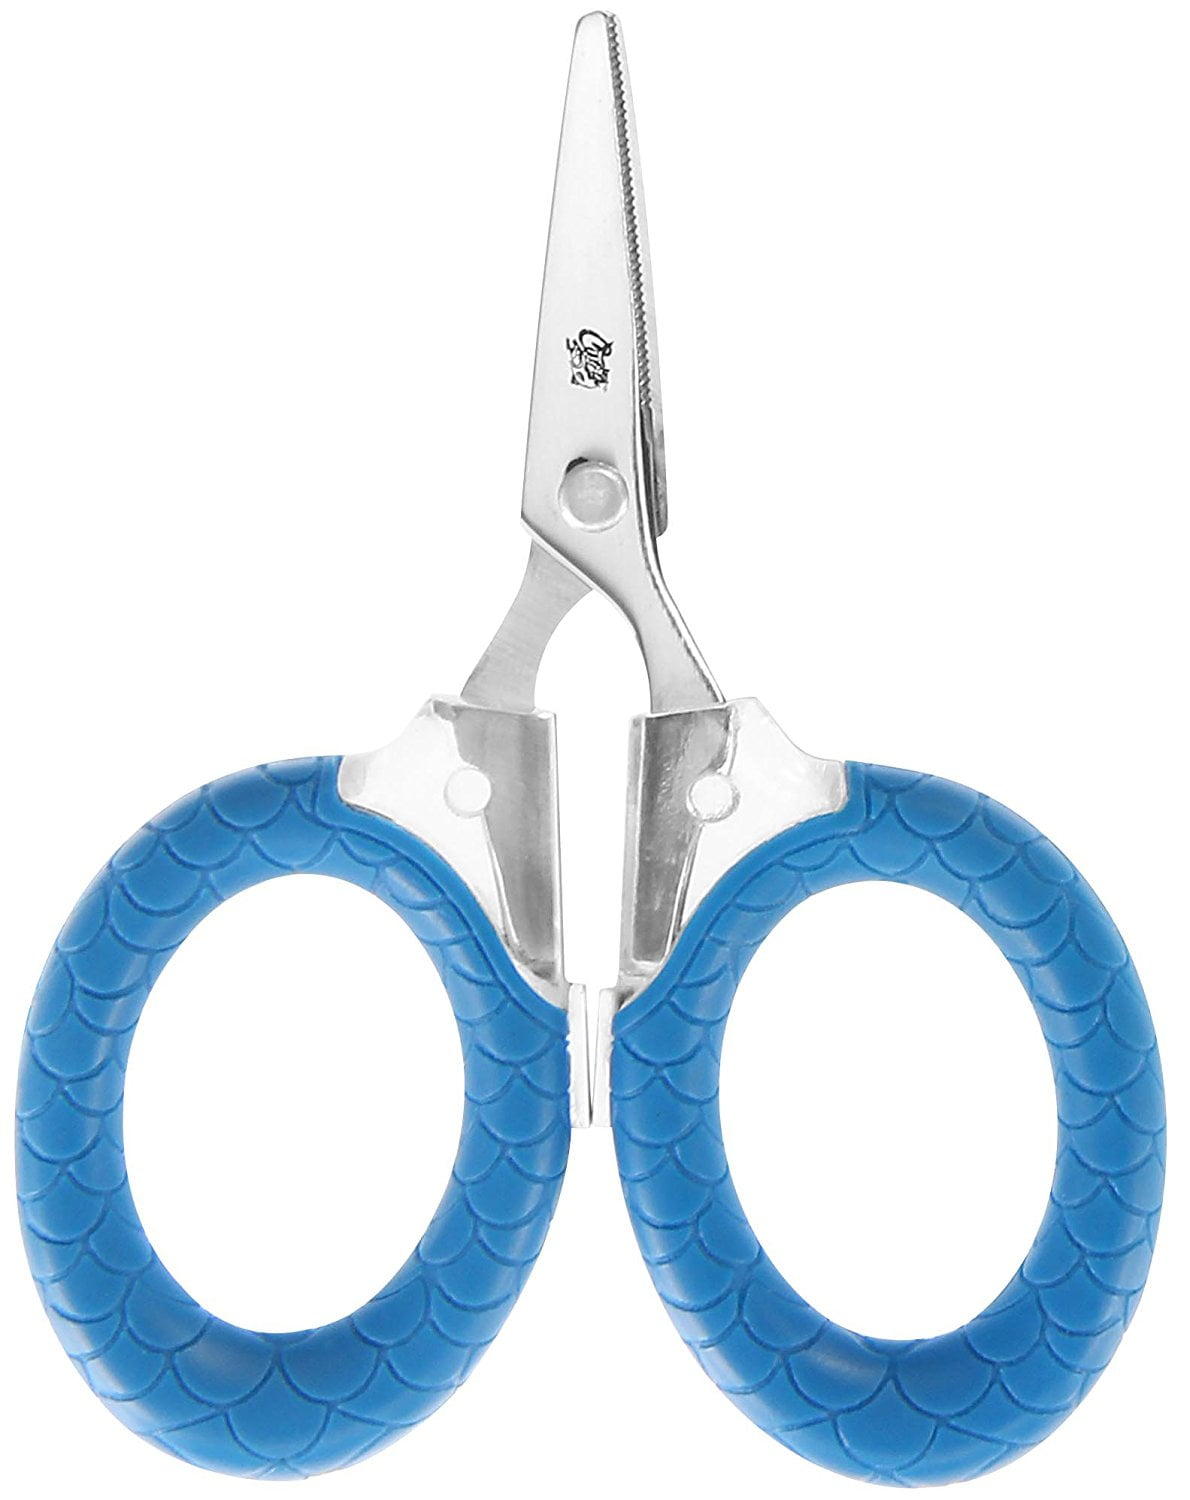 Cuda Micro Scissors, 3", Titanium Bonded, Serrated Blades, Blue, Fishing Tool, 1-Count